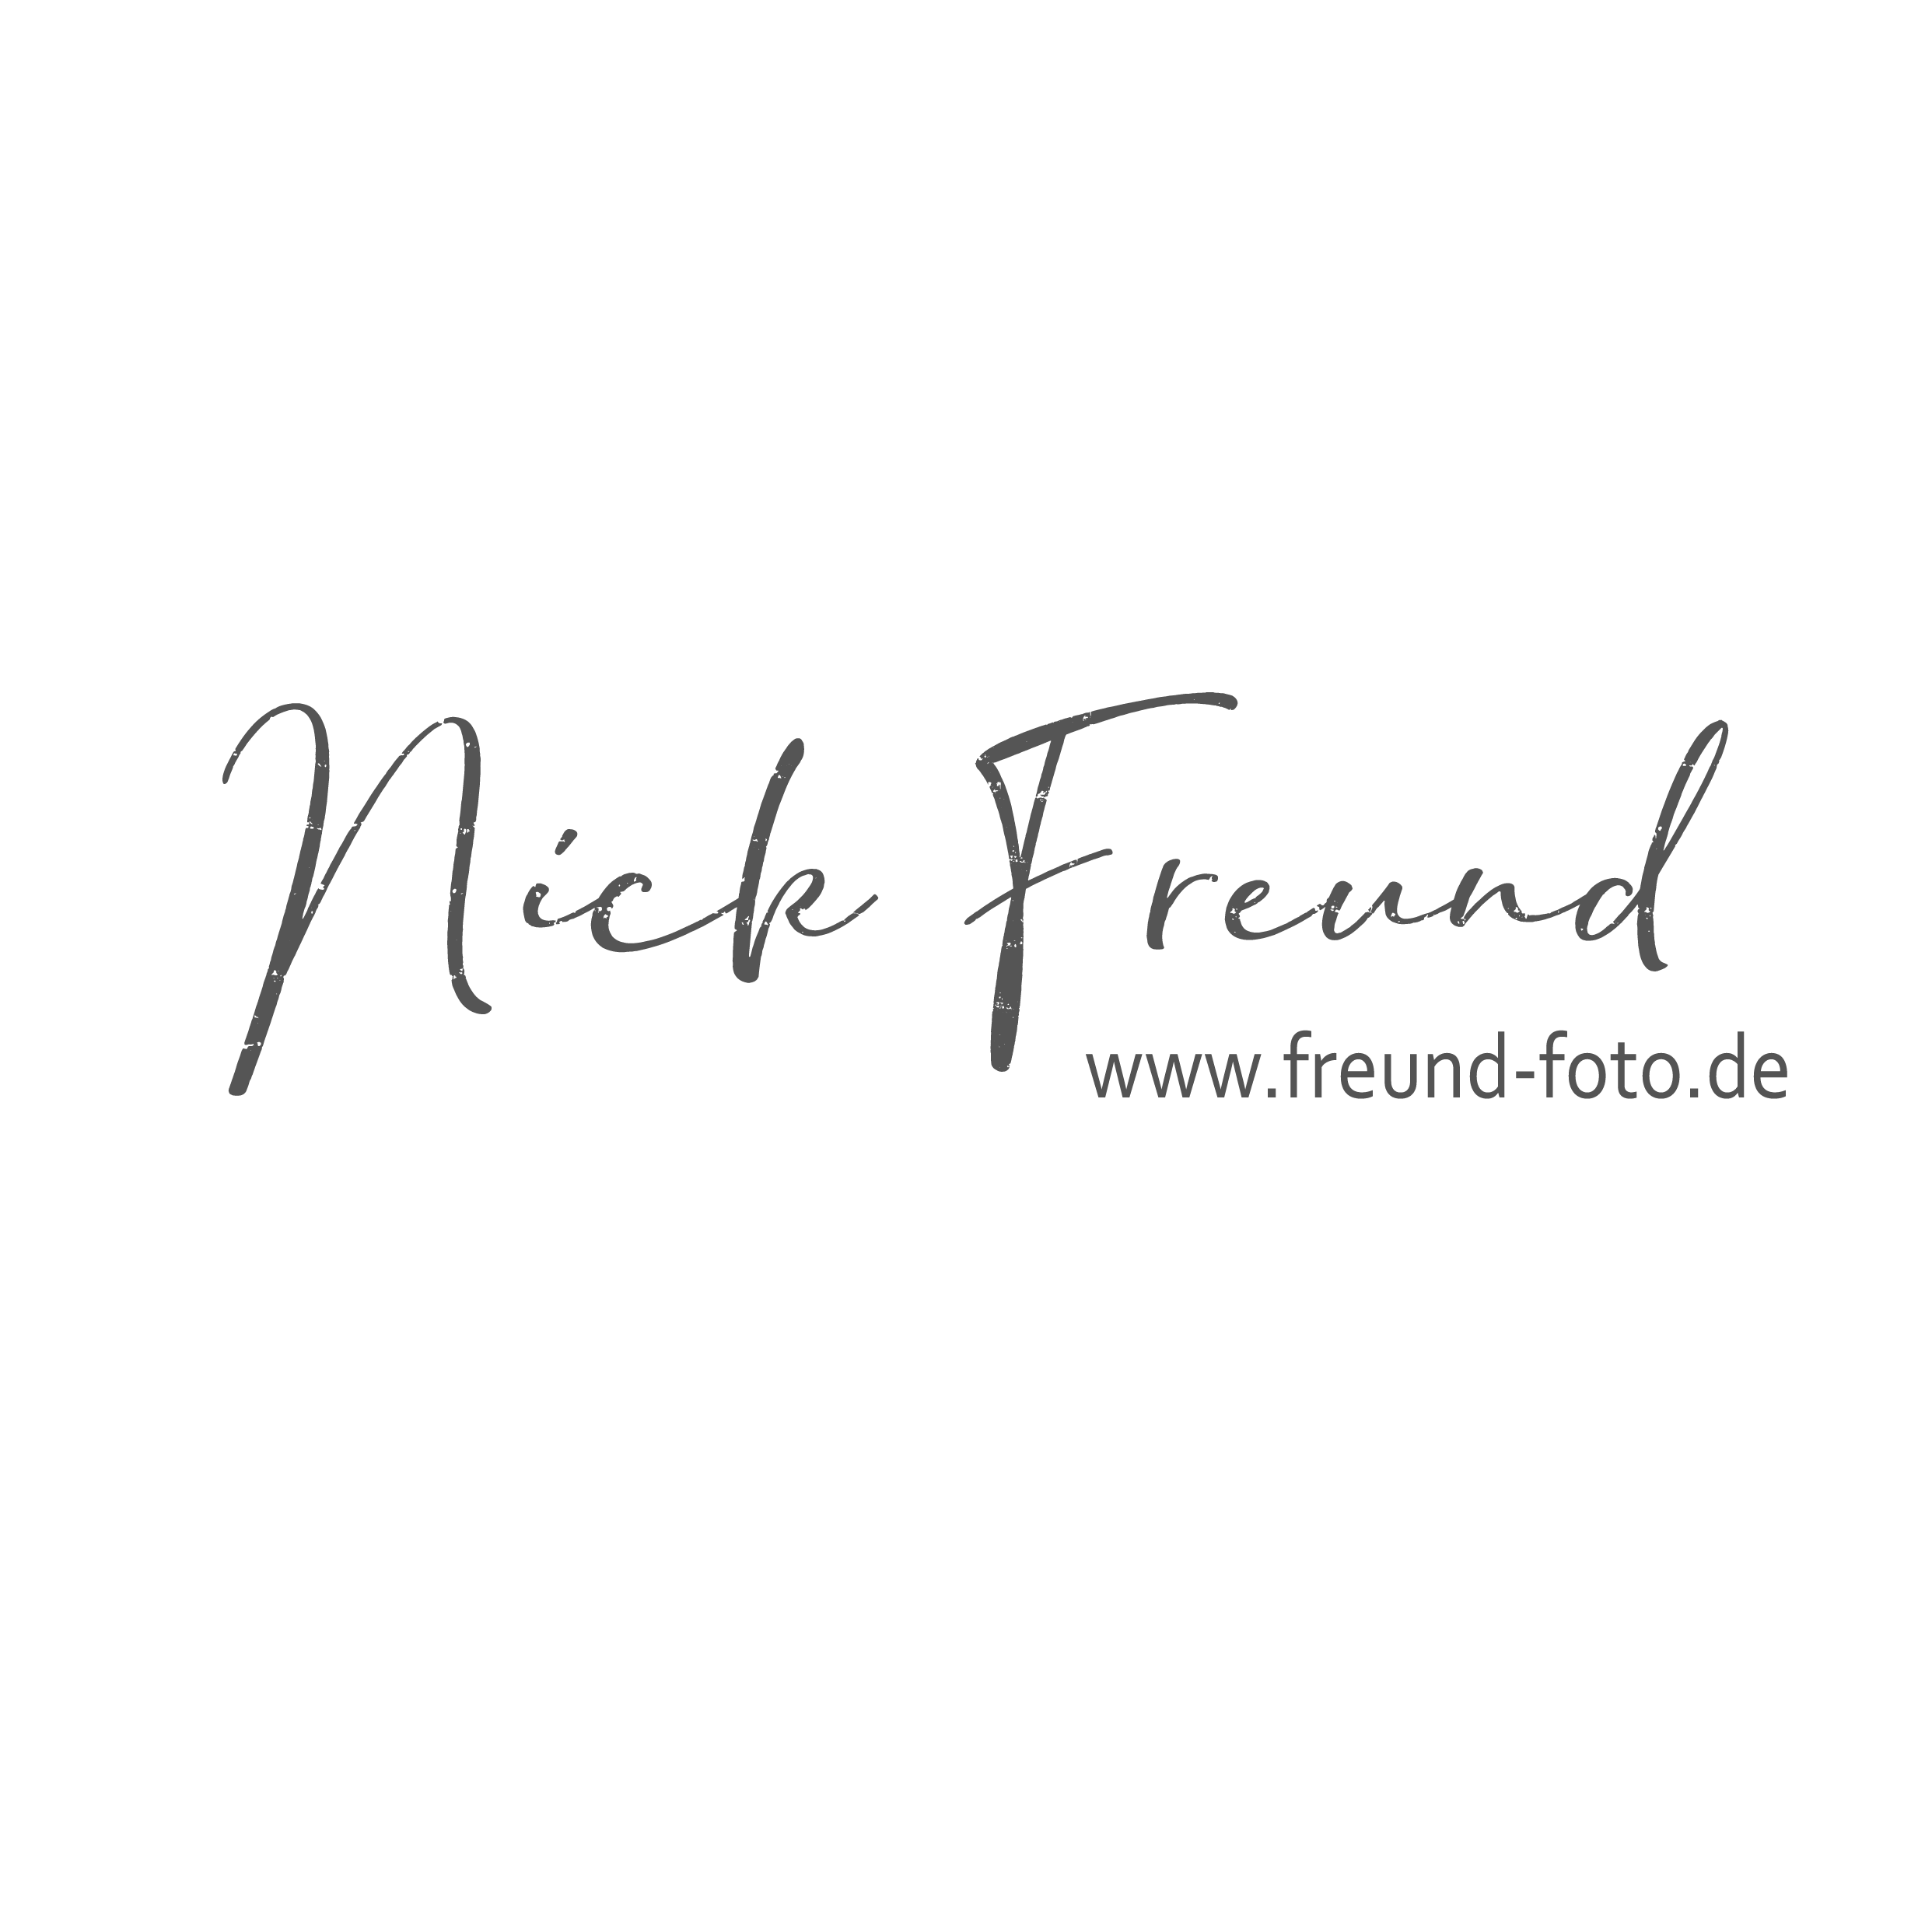 Freund Foto in Oberasbach bei Nürnberg - Logo